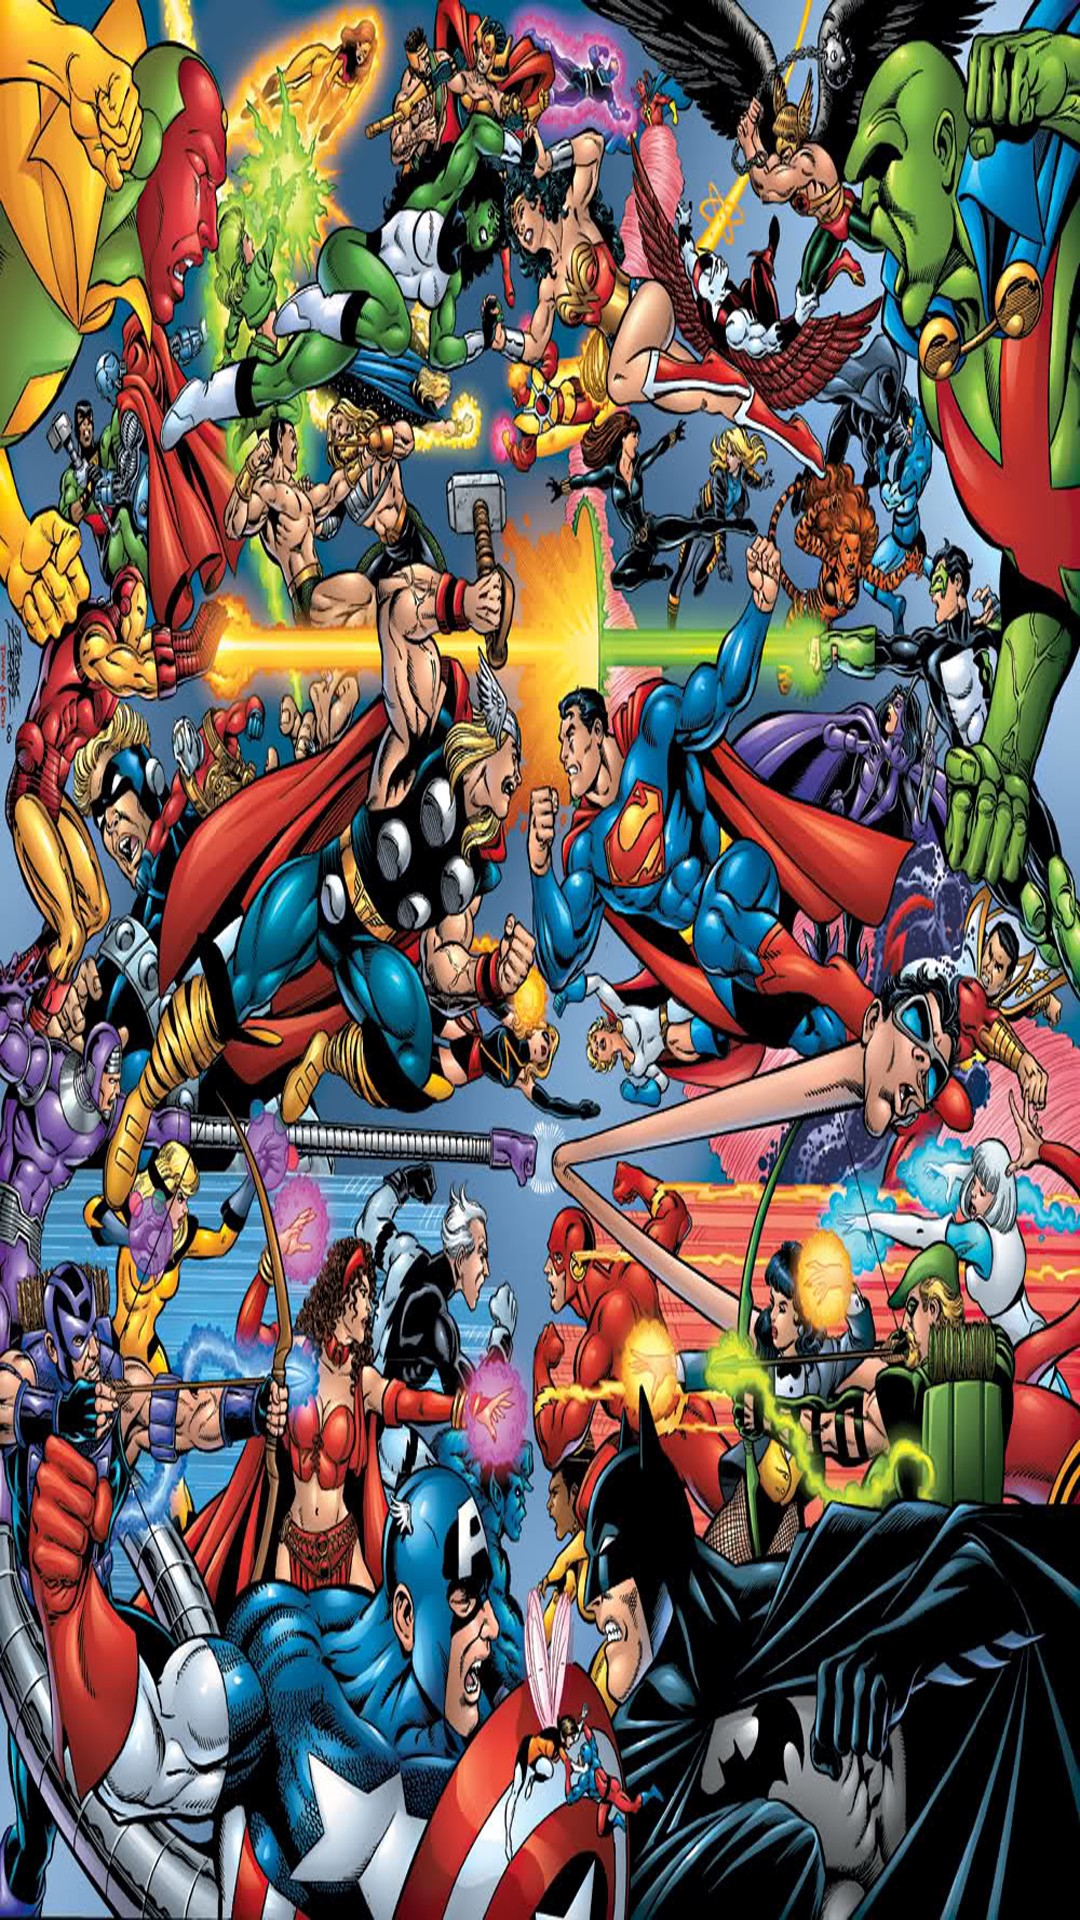 fond d'écran marvel hd,des bandes dessinées,personnage fictif,fiction,héros,super héros